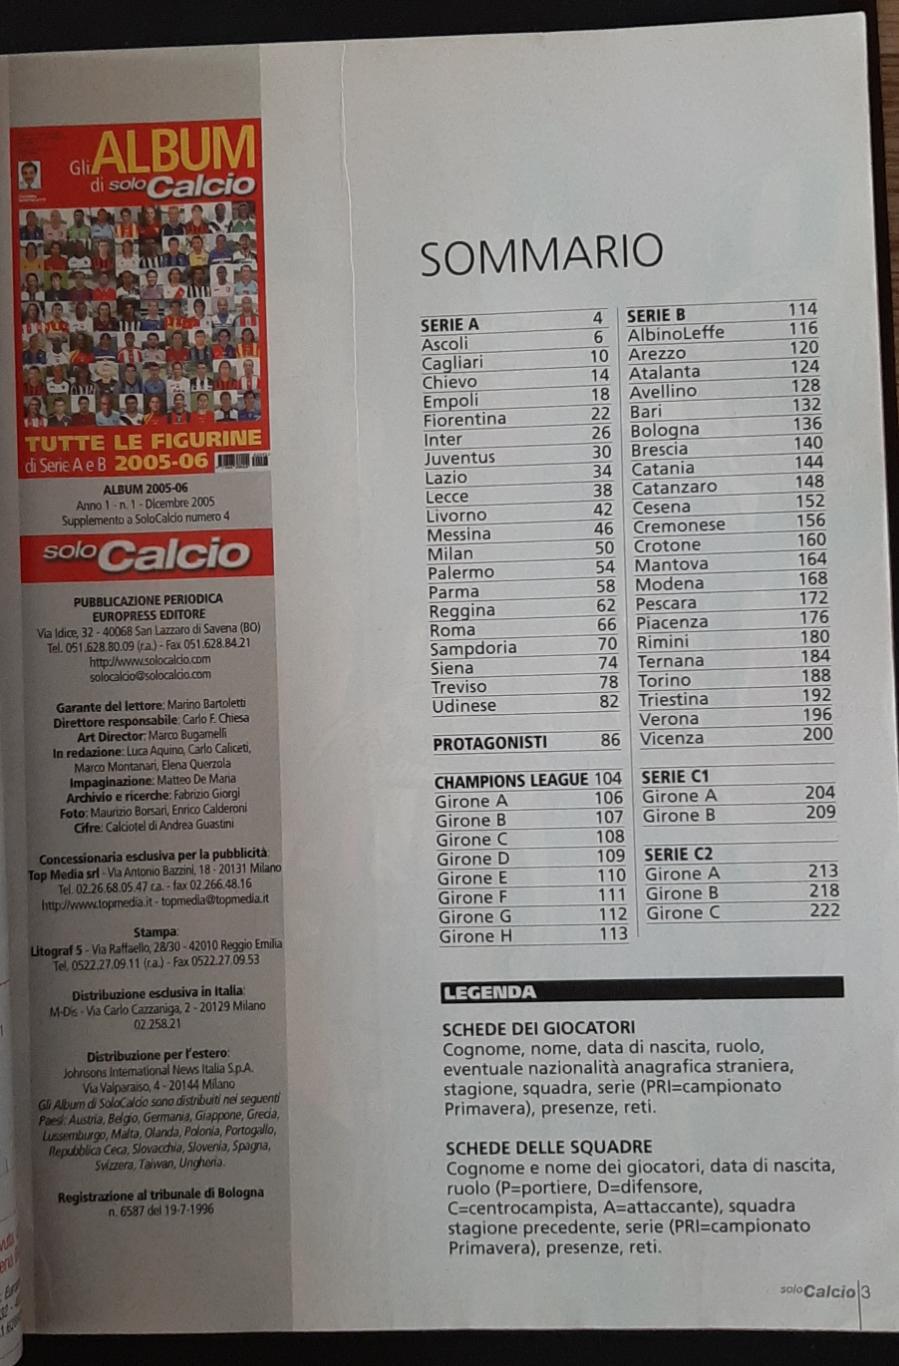 Album di solo Calcio 2005/06 Італія Фото гравців всіх команд Серії А і В 1